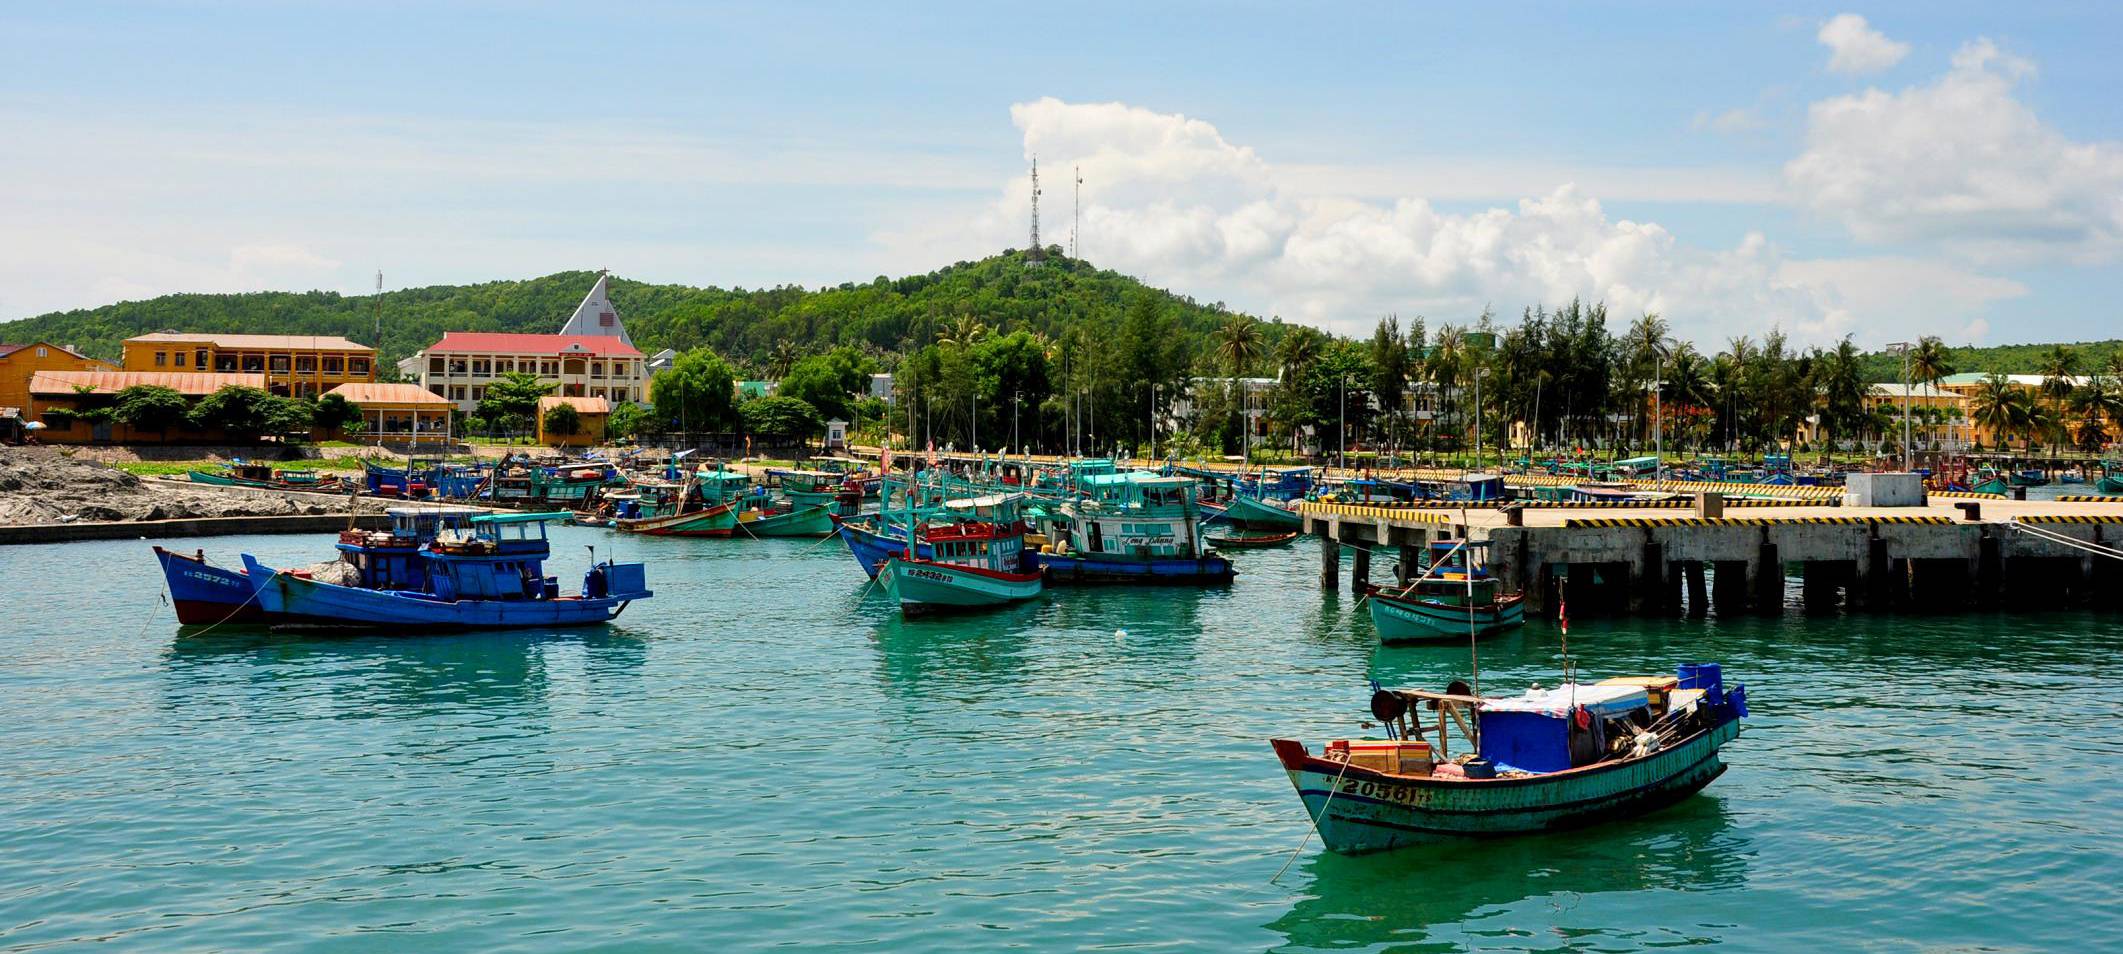 Откройте для себя остров фукуок - настоящую жемчужину вьетнама экзотик